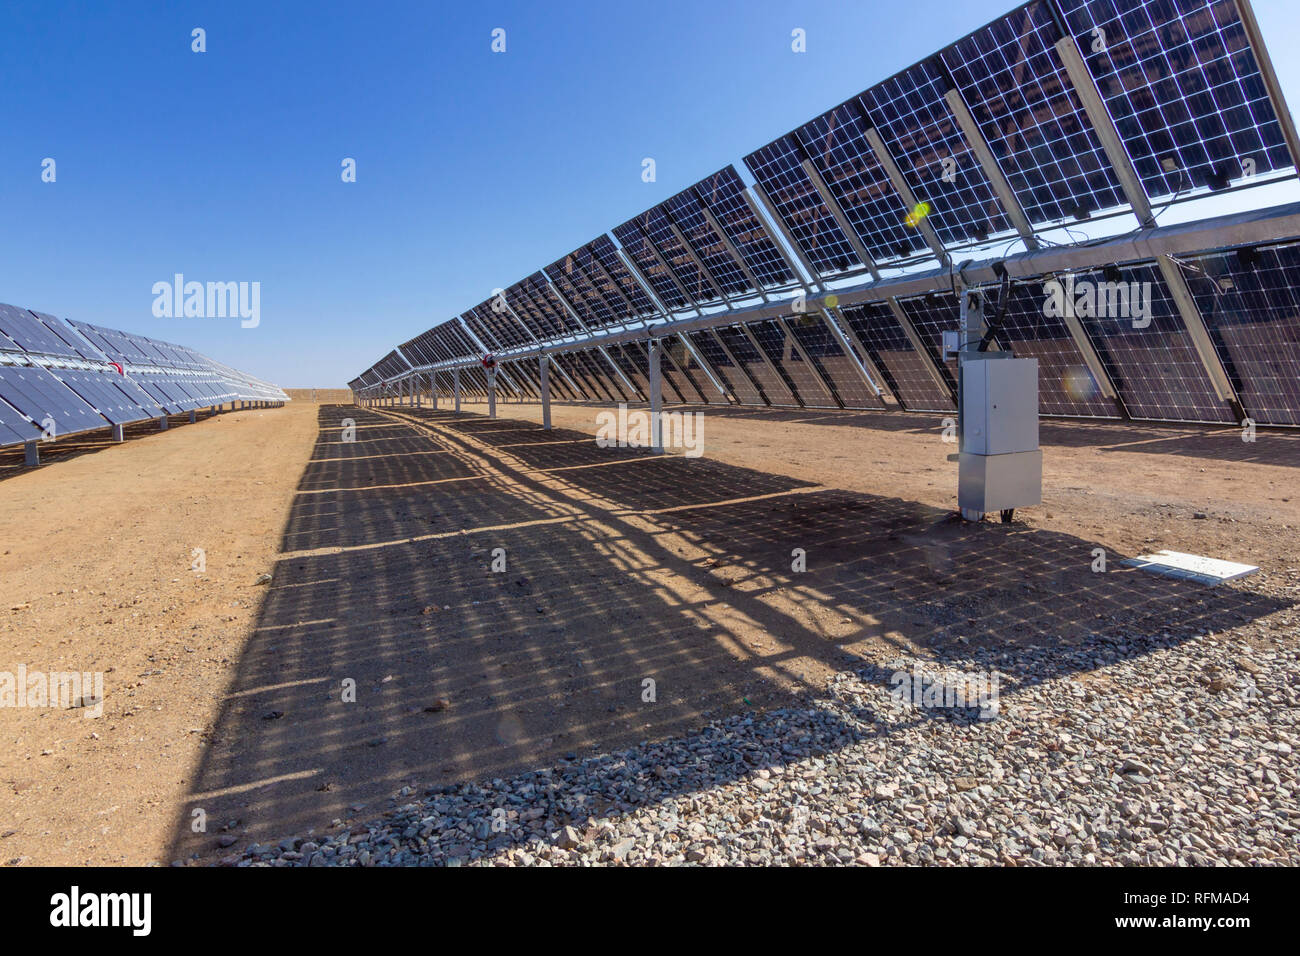 Modules d'énergie solaire Bifacial à la centrale d'énergie solaire dans le désert d'Atacama. Combattre le changement climatique et le réchauffement climatique avec des ressources durables Banque D'Images